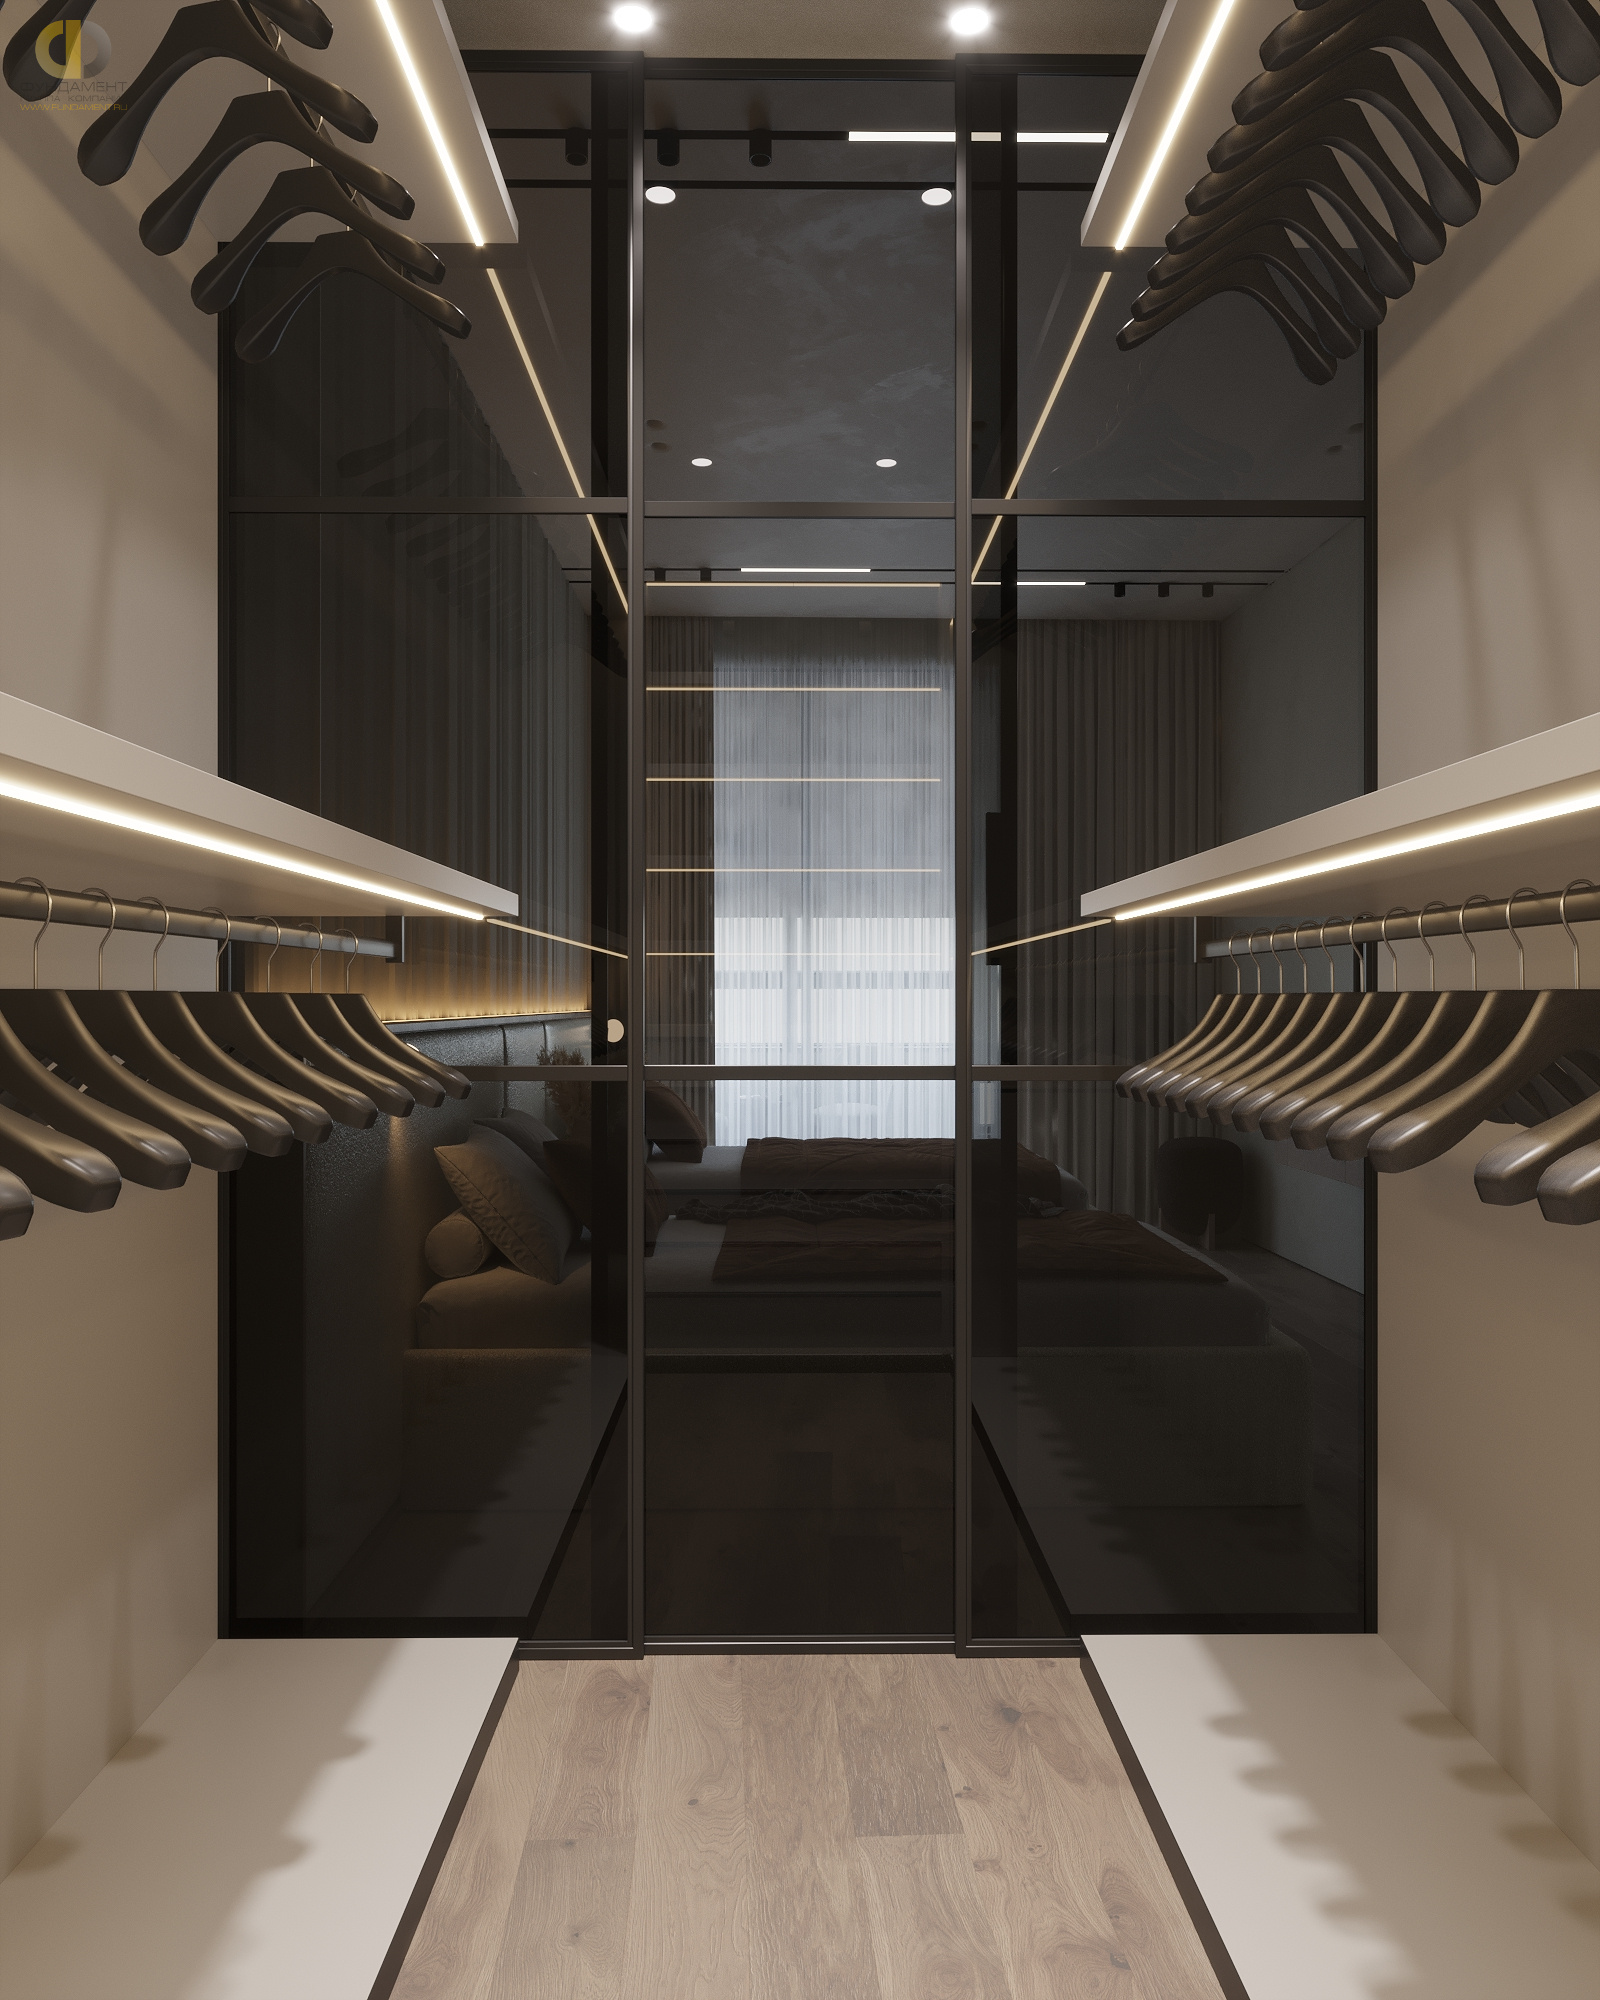 Услуги и цены студии дизайна Мята в Нью-Йорке 🏠 Стоимость дизайн-проекта интерьера квартиры